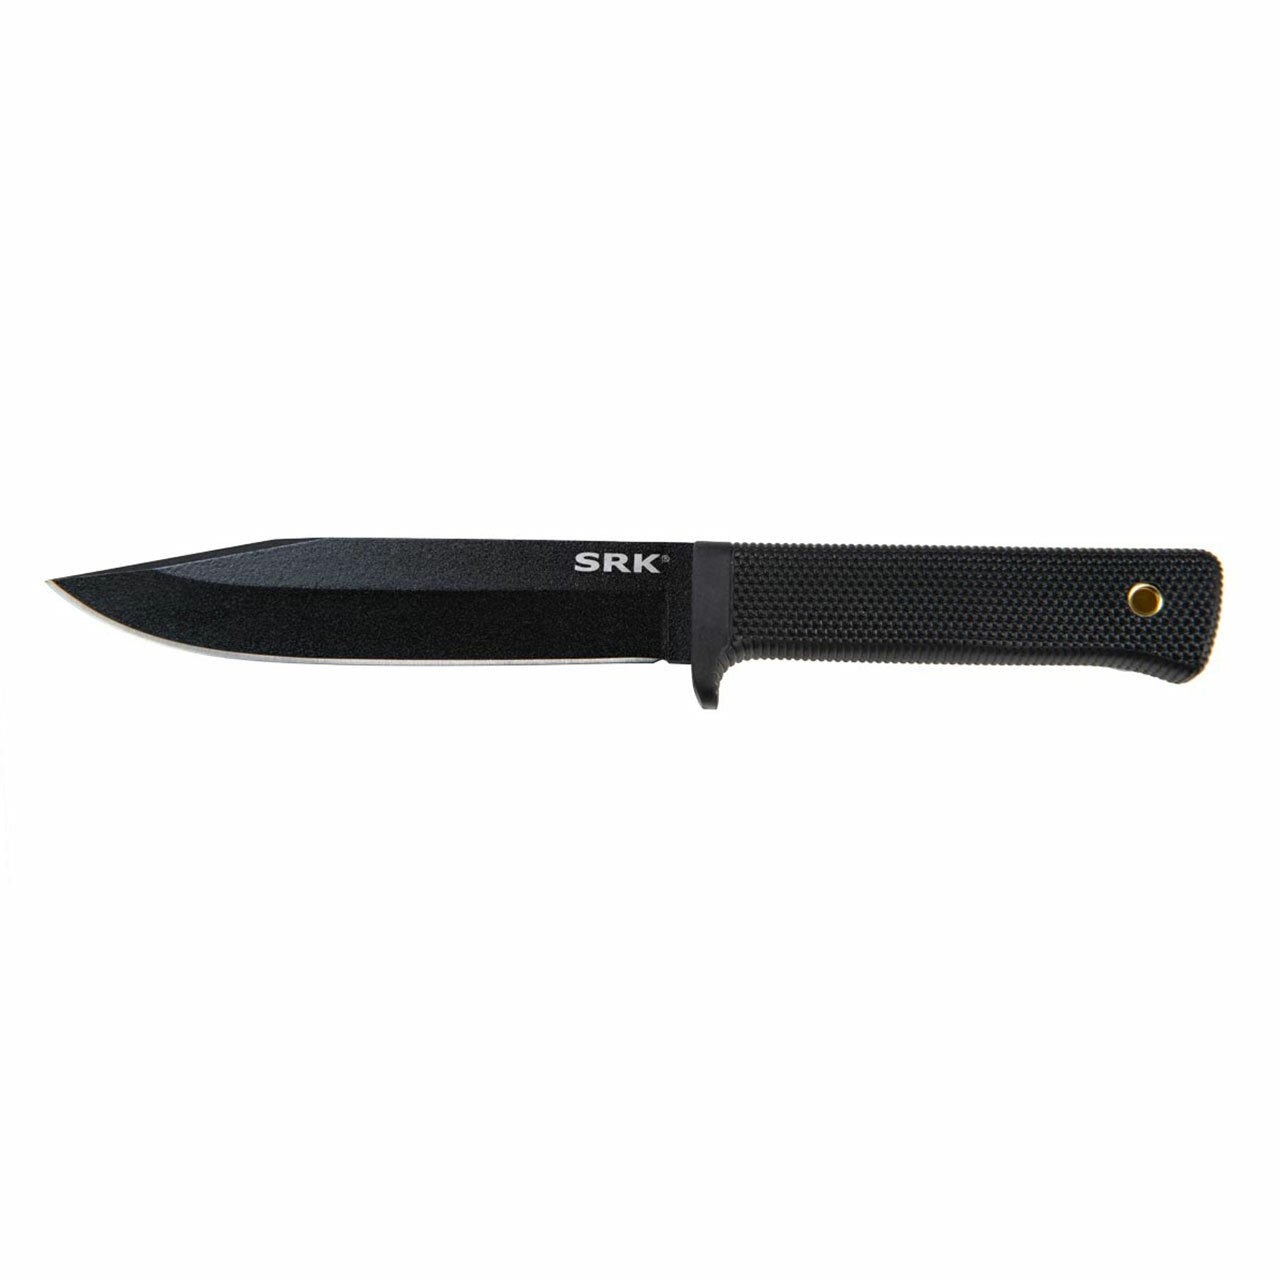 Cold Steel SRK Fixed Blade Survival Knife – SK5 Steel | Cold Steel